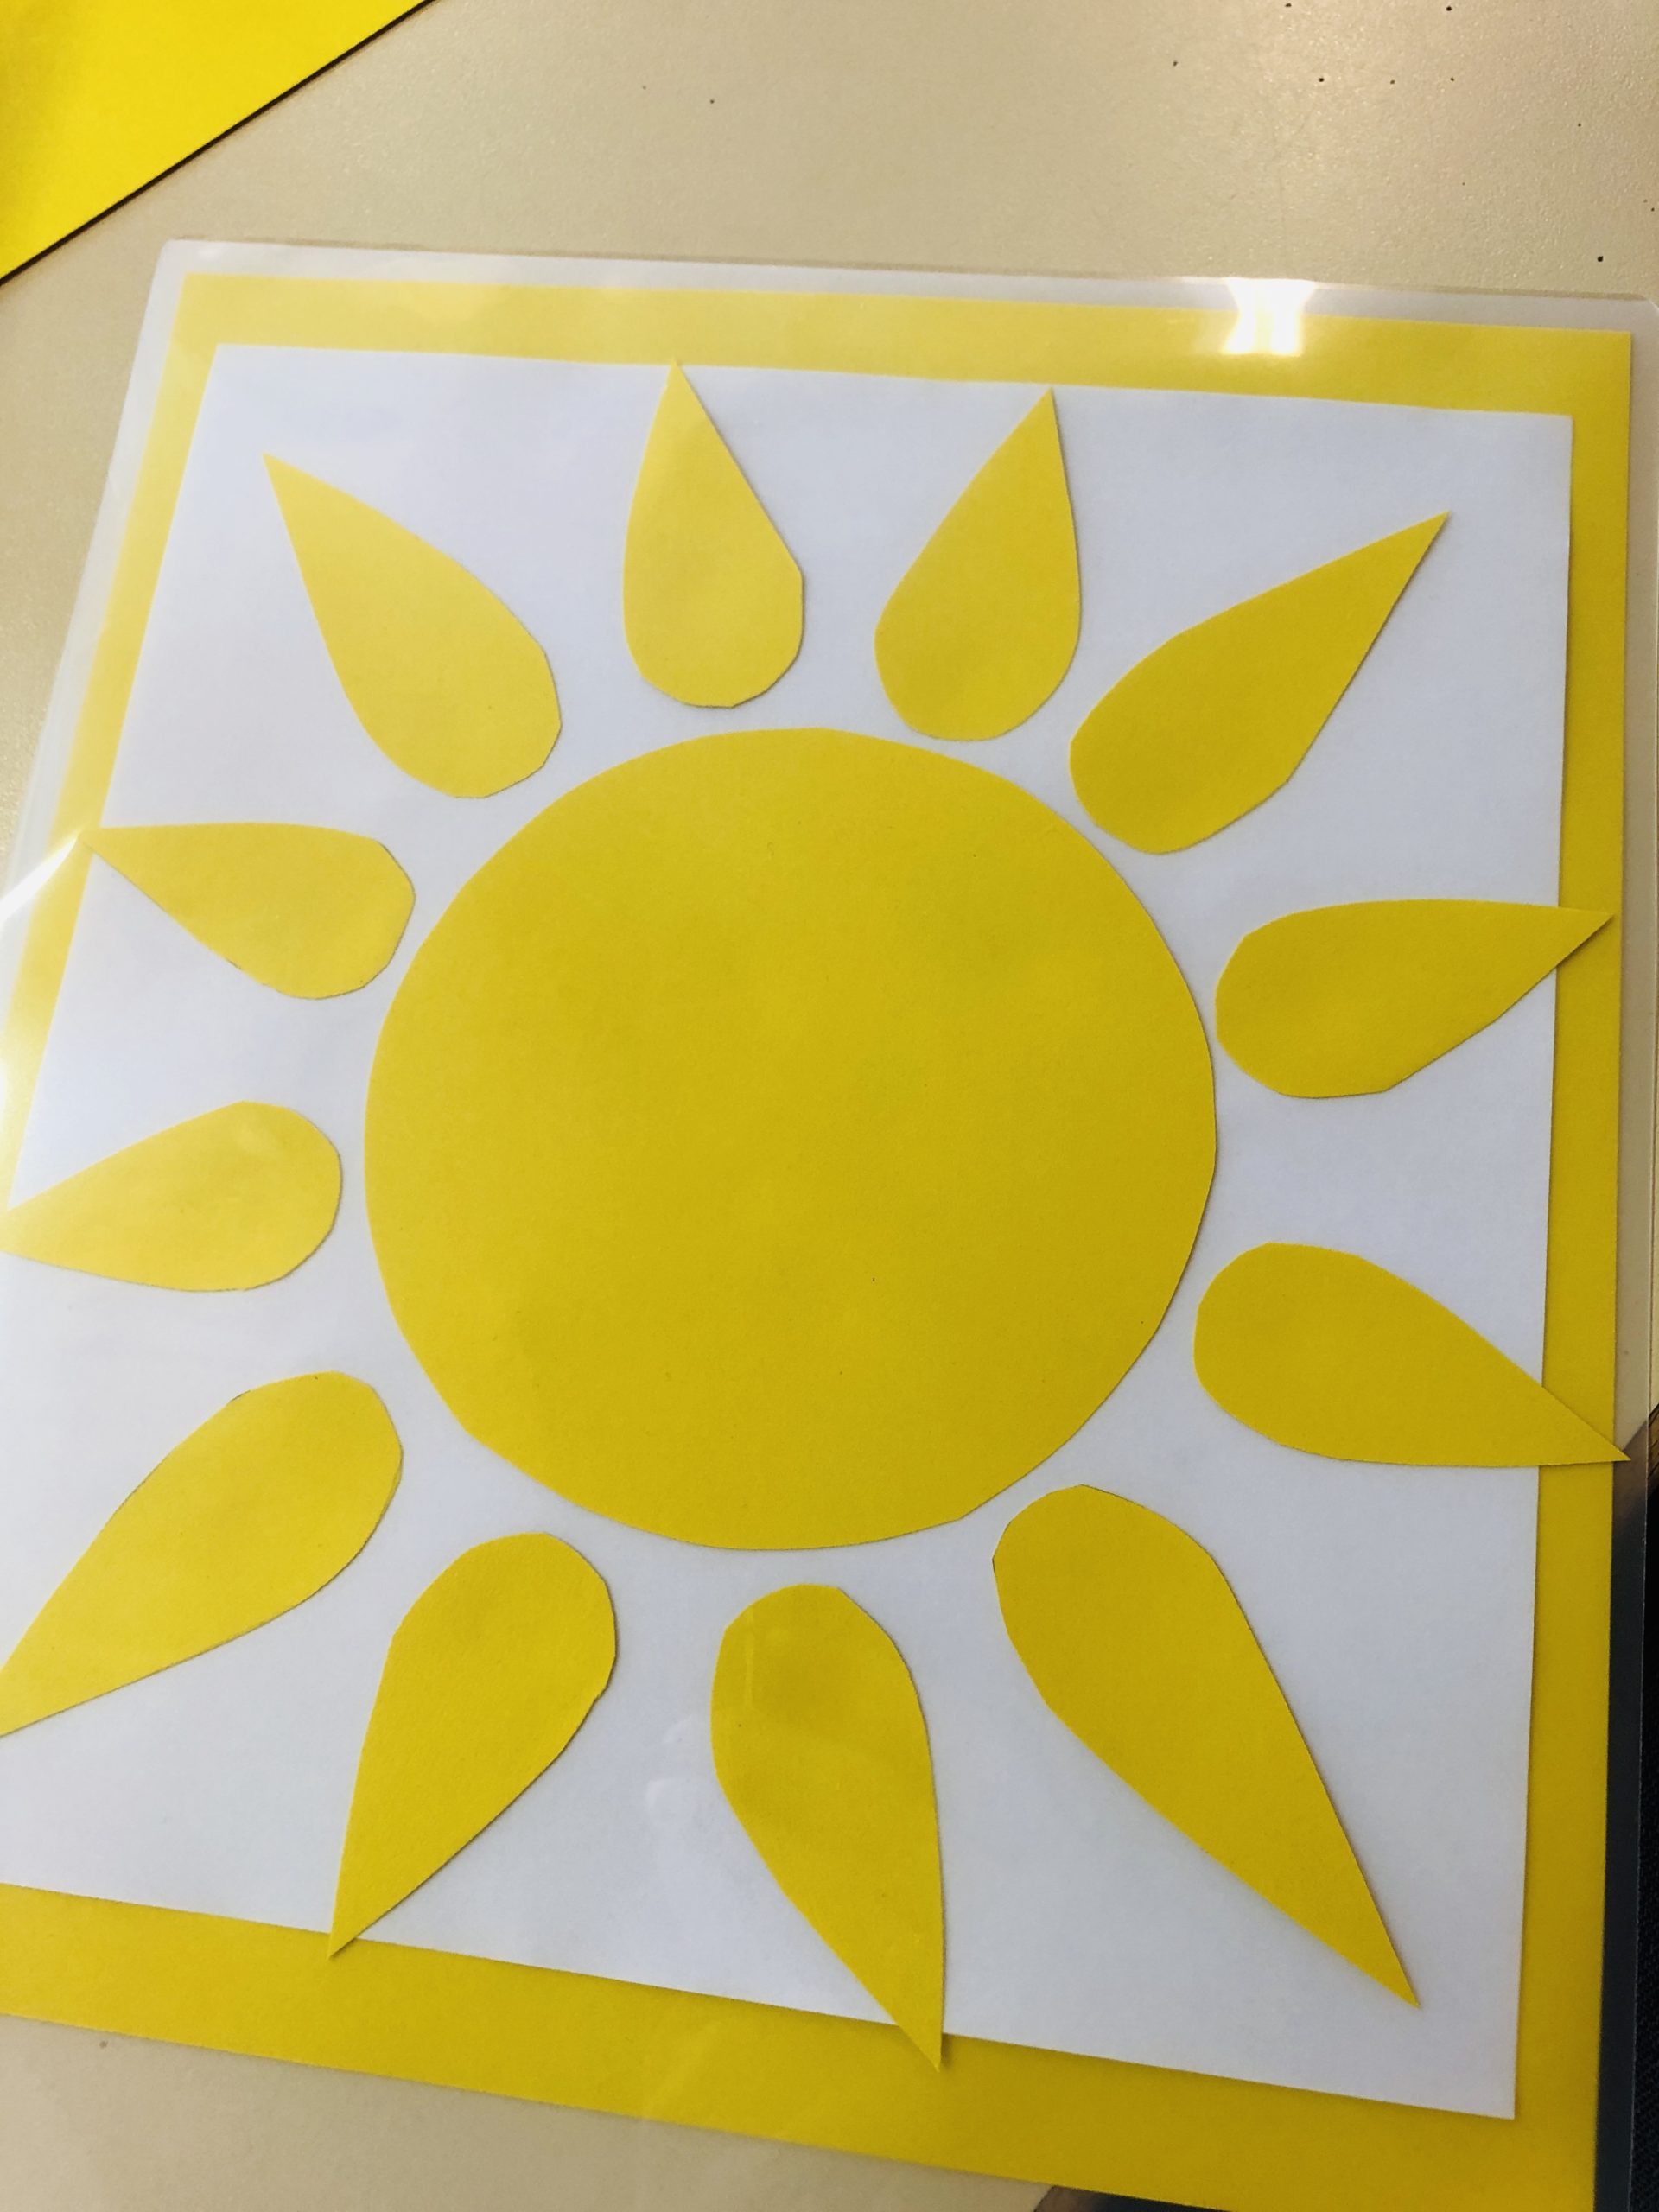 Bild zum Schritt 5 für das Bastel- und DIY-Abenteuer für Kinder: 'Das Sonnenbild nun laminieren.'